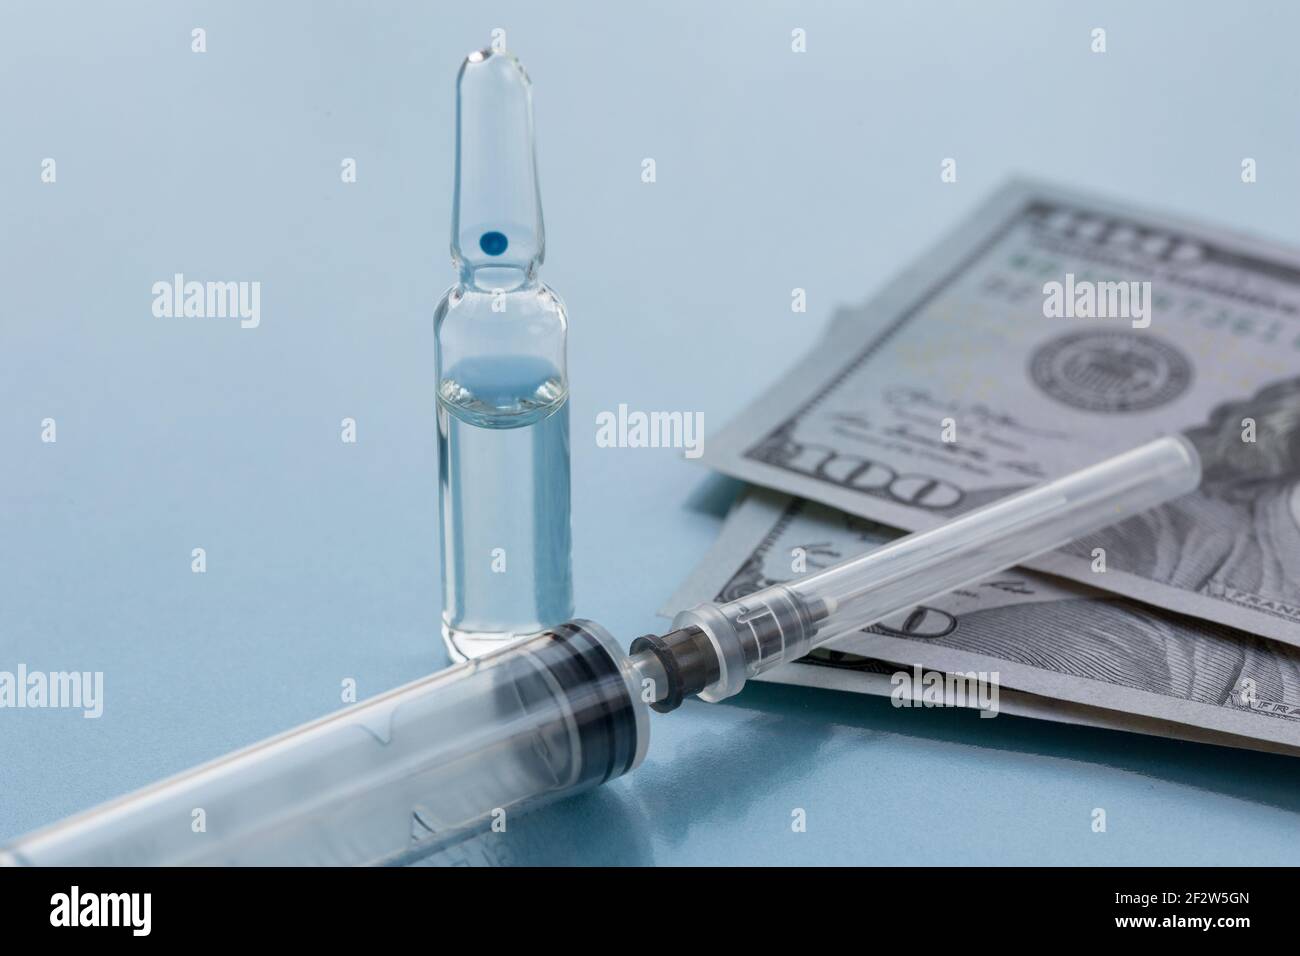 Ampollas, siringa estraibile per la vaccinazione e carta di denaro. Il concetto di medicina di assicurazione, costo elevato delle droghe. Isolato su sfondo blu. Foto Stock